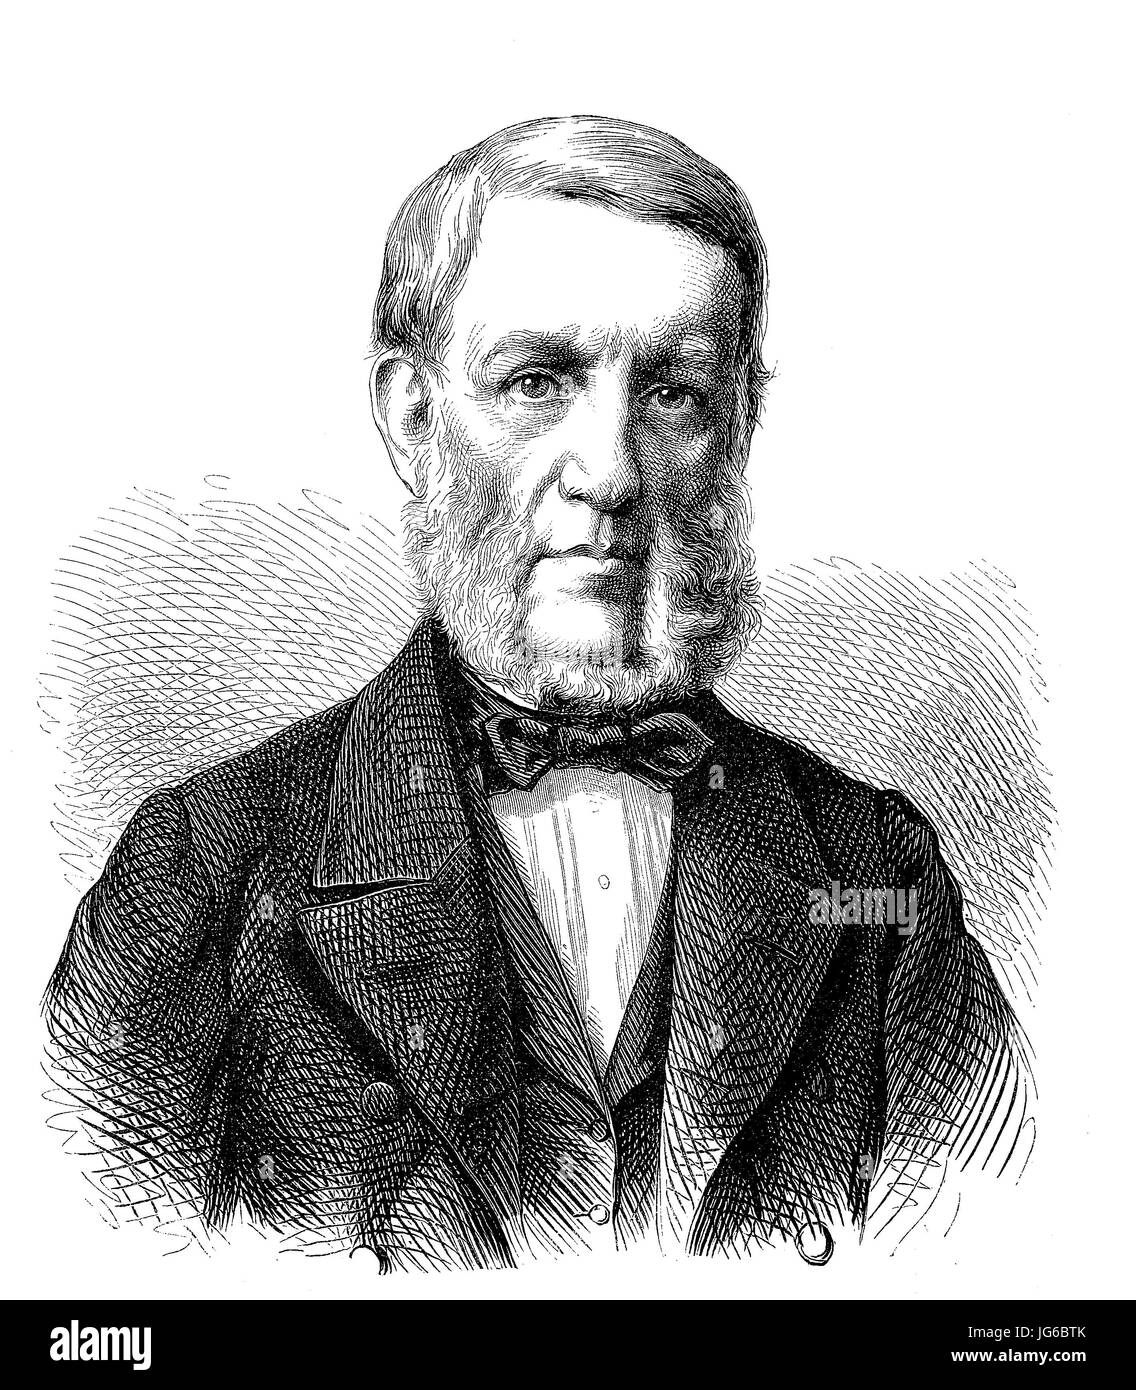 Amélioré : numérique, George Bancroft, 1800 - 1891, était un historien et homme d'État américain, l'Amérique, l'illustration du xixe siècle Banque D'Images